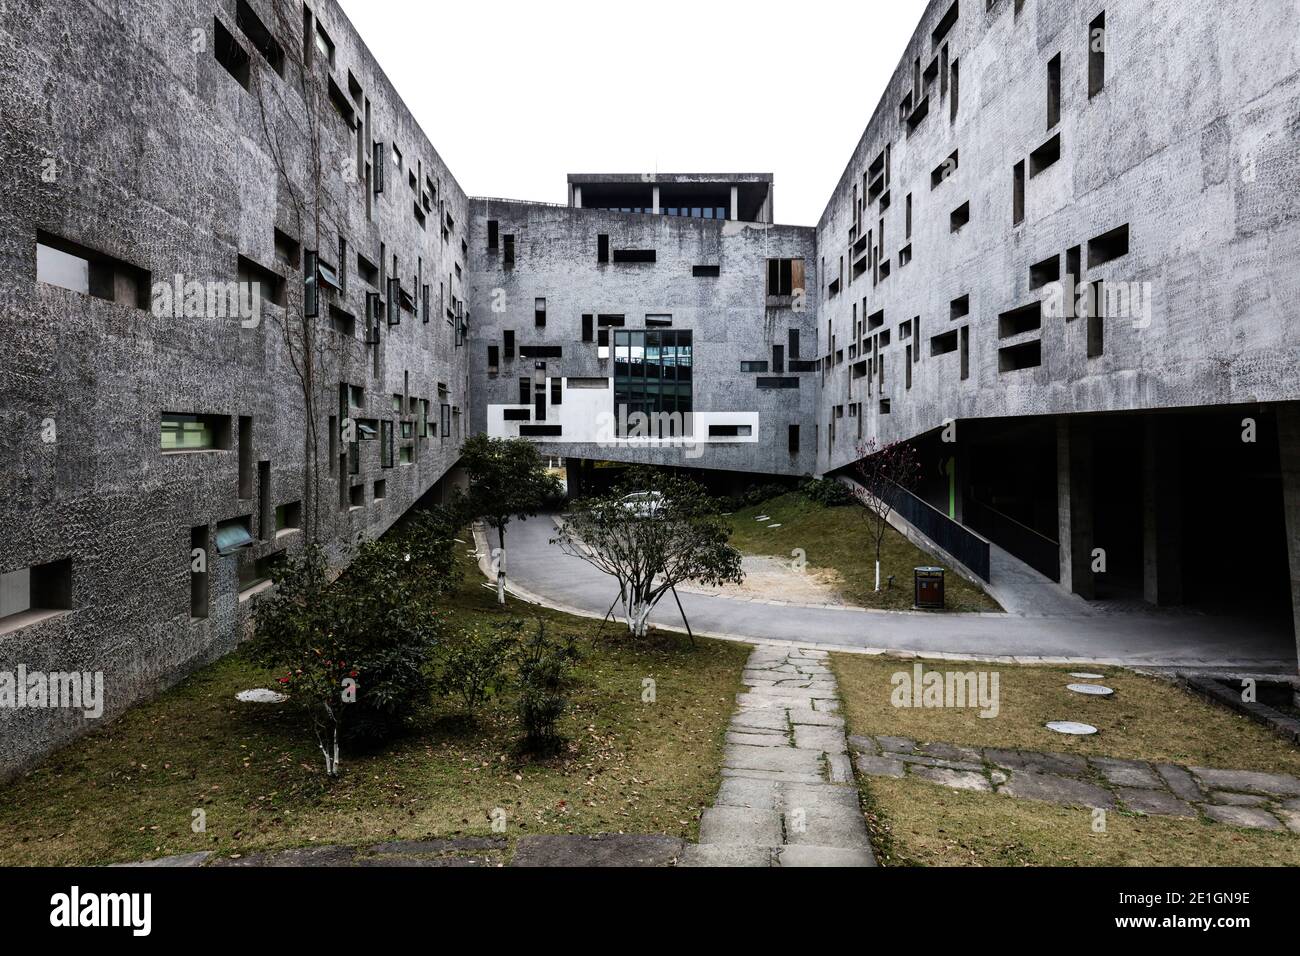 Vue extérieure de la Nouvelle Académie d'Art de Hangzhou, Chine. Façade en carreaux gris avec fenêtres irrégulières. Banque D'Images